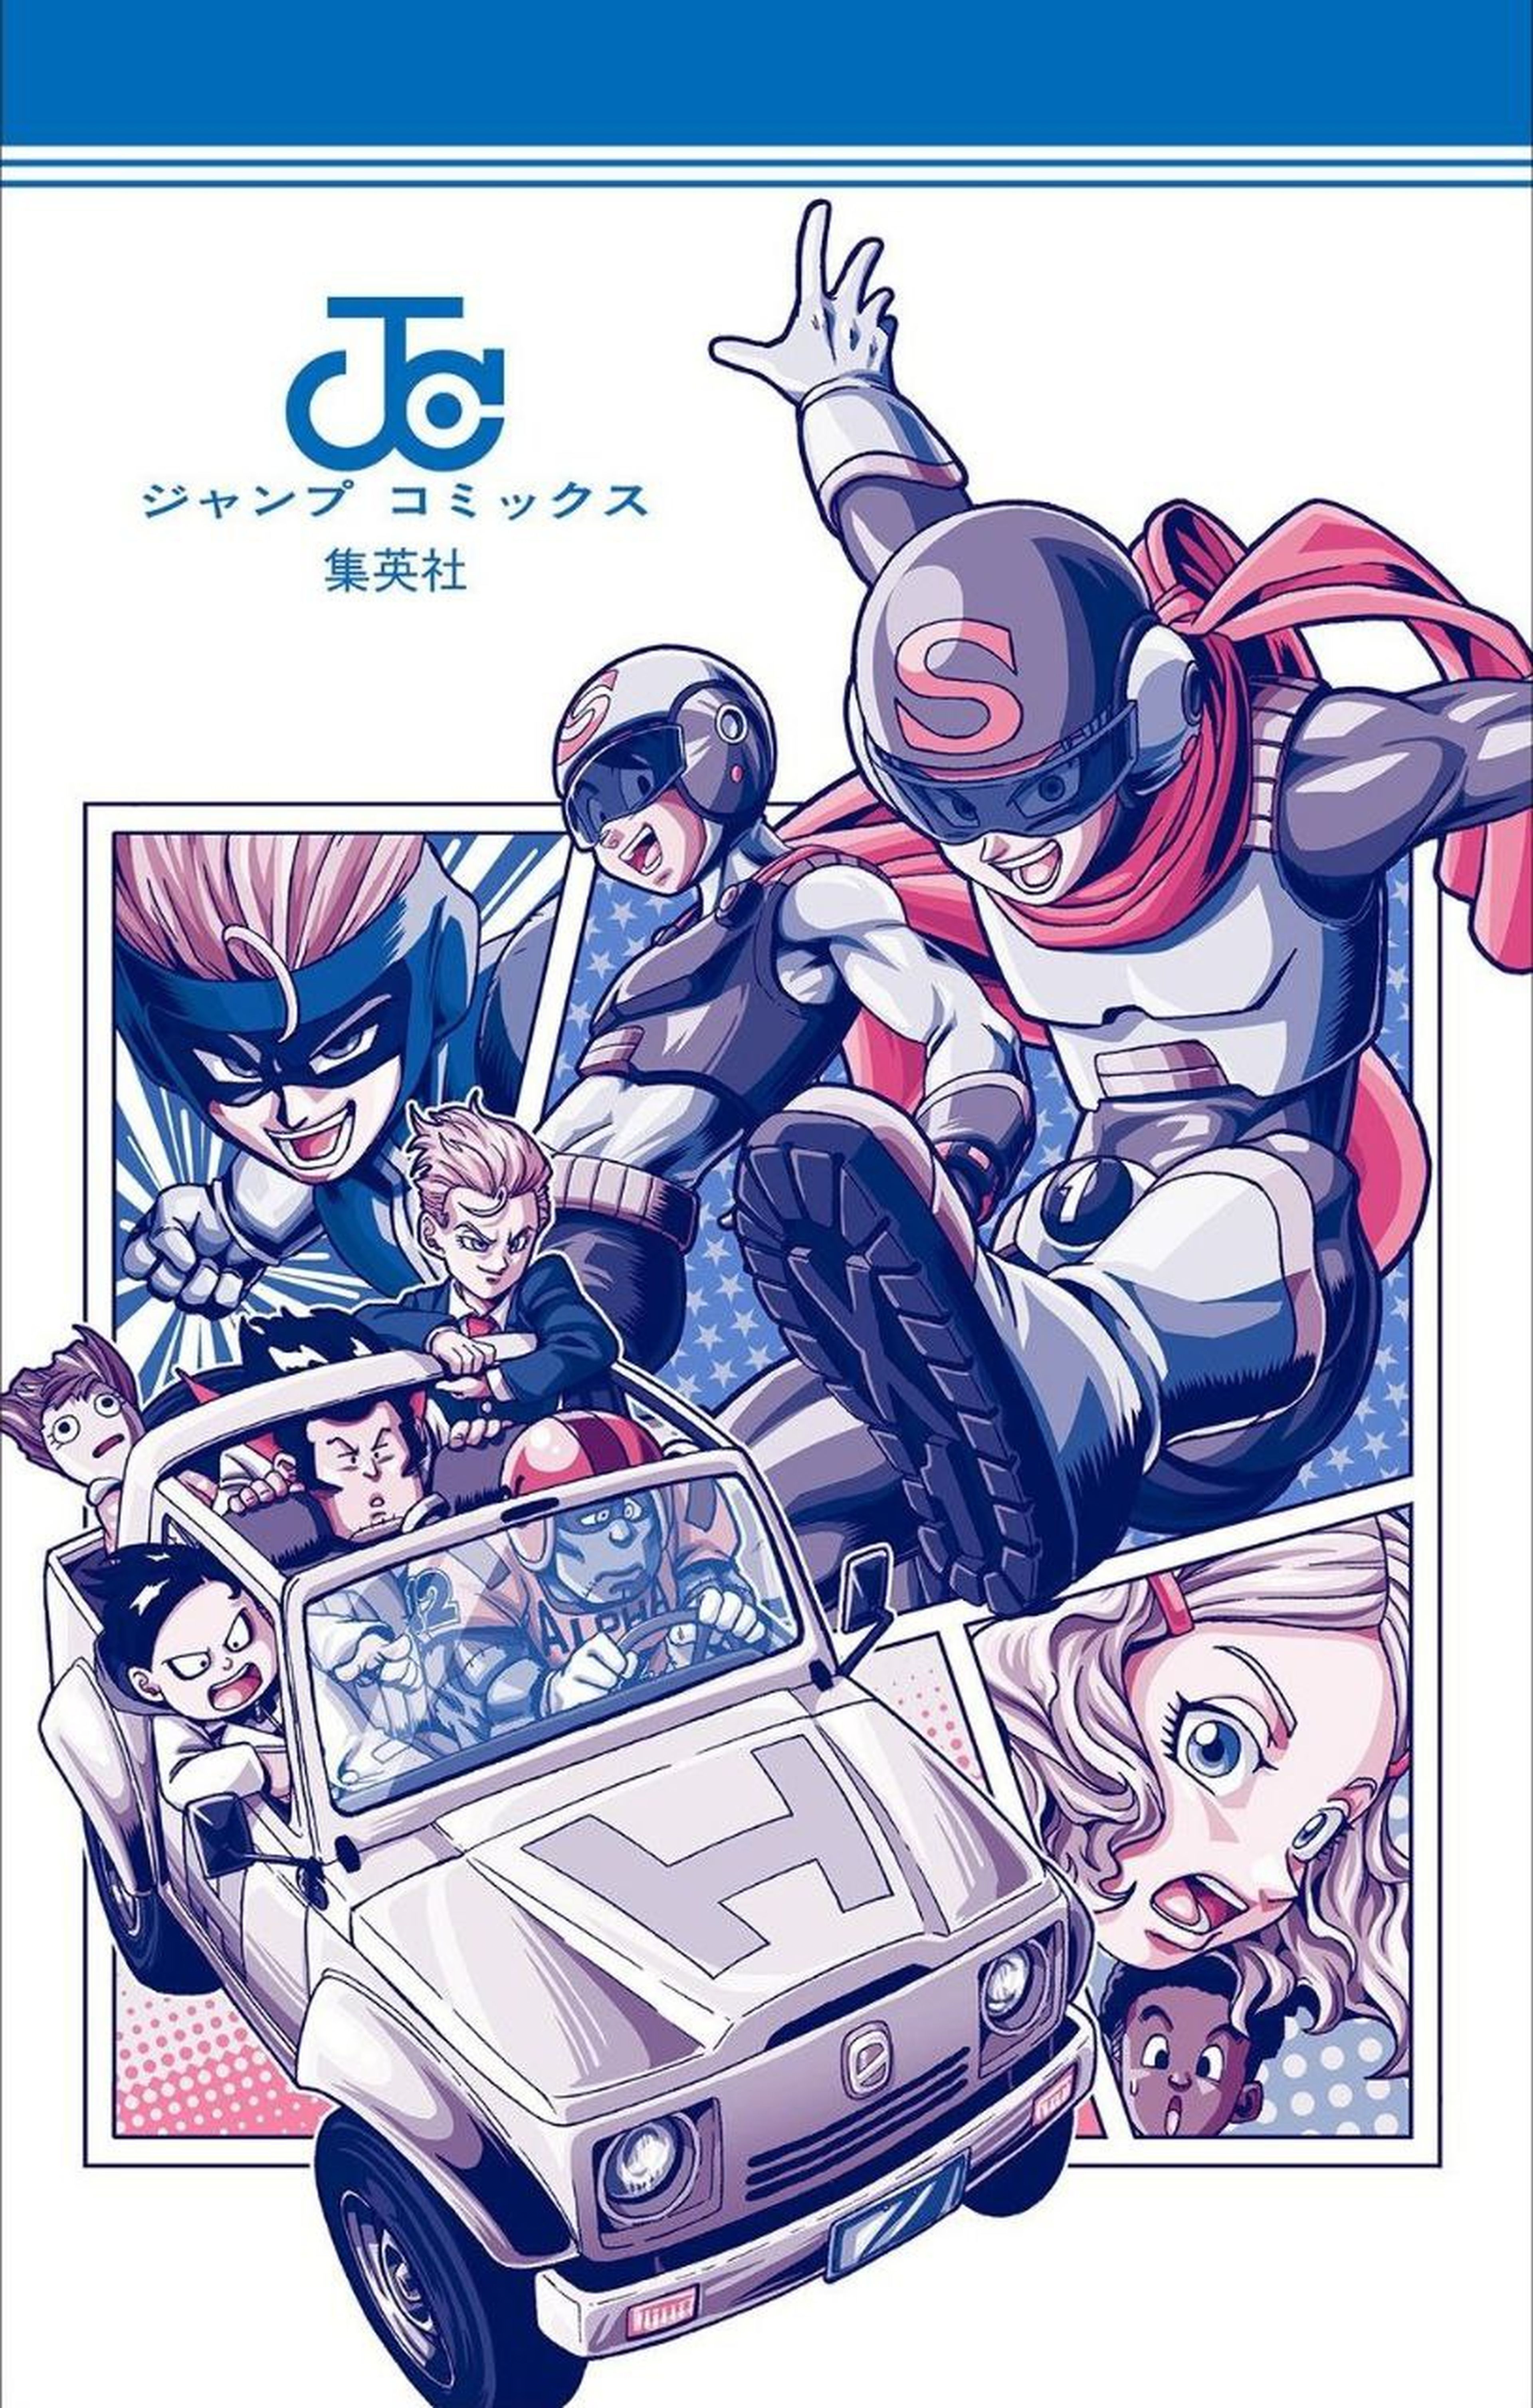 Dragon Ball Super - Desvelado un diseño inédito de Toyotaro para el nuevo tomo manga de la serie 